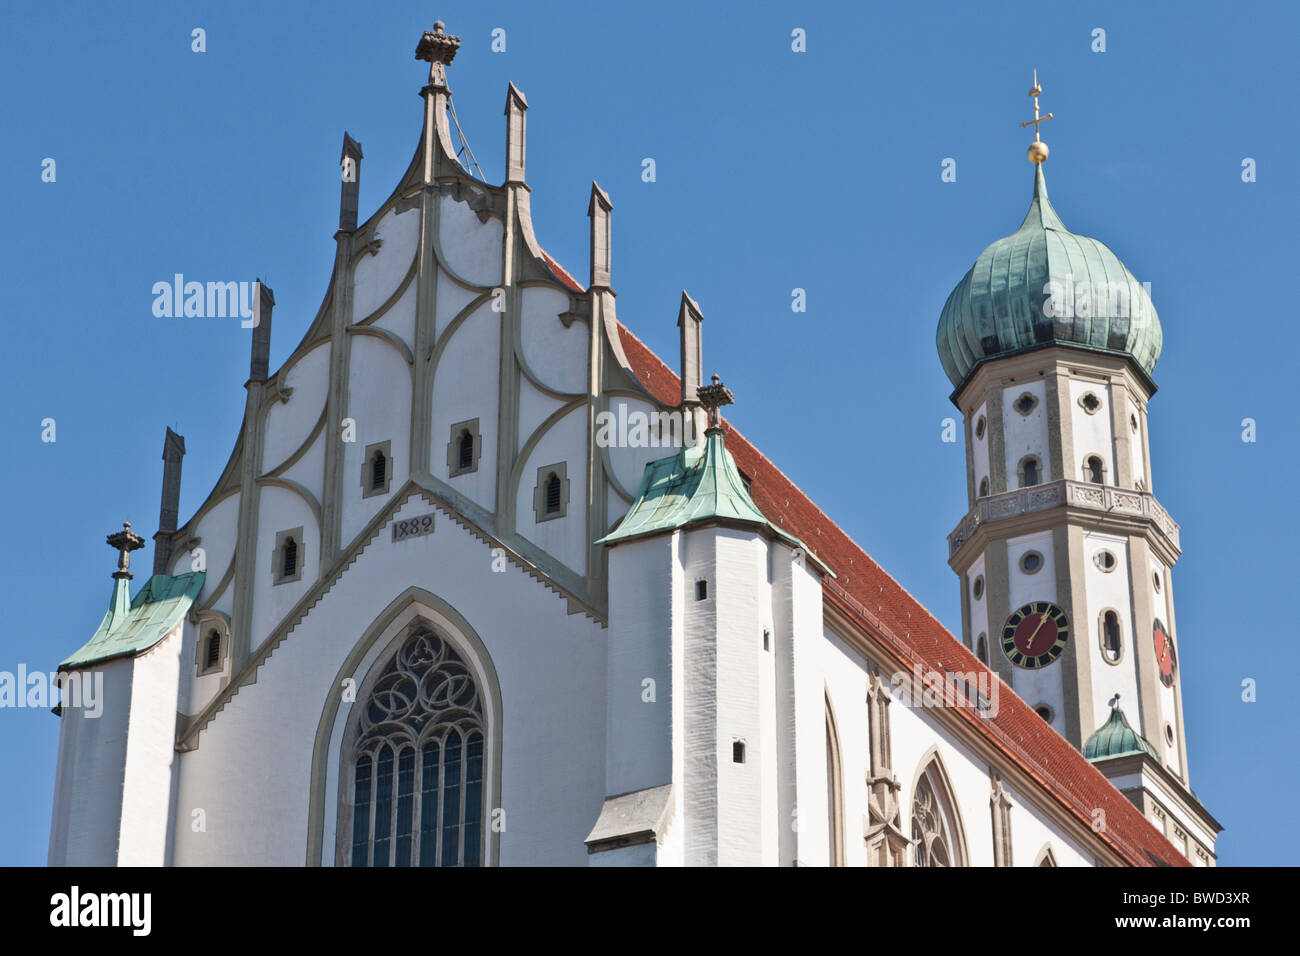 ST. ULRICH UND AFRA CHIESA CATTEDRALE, stile tardo-gotico, Augsburg, Baviera, Germania Foto Stock